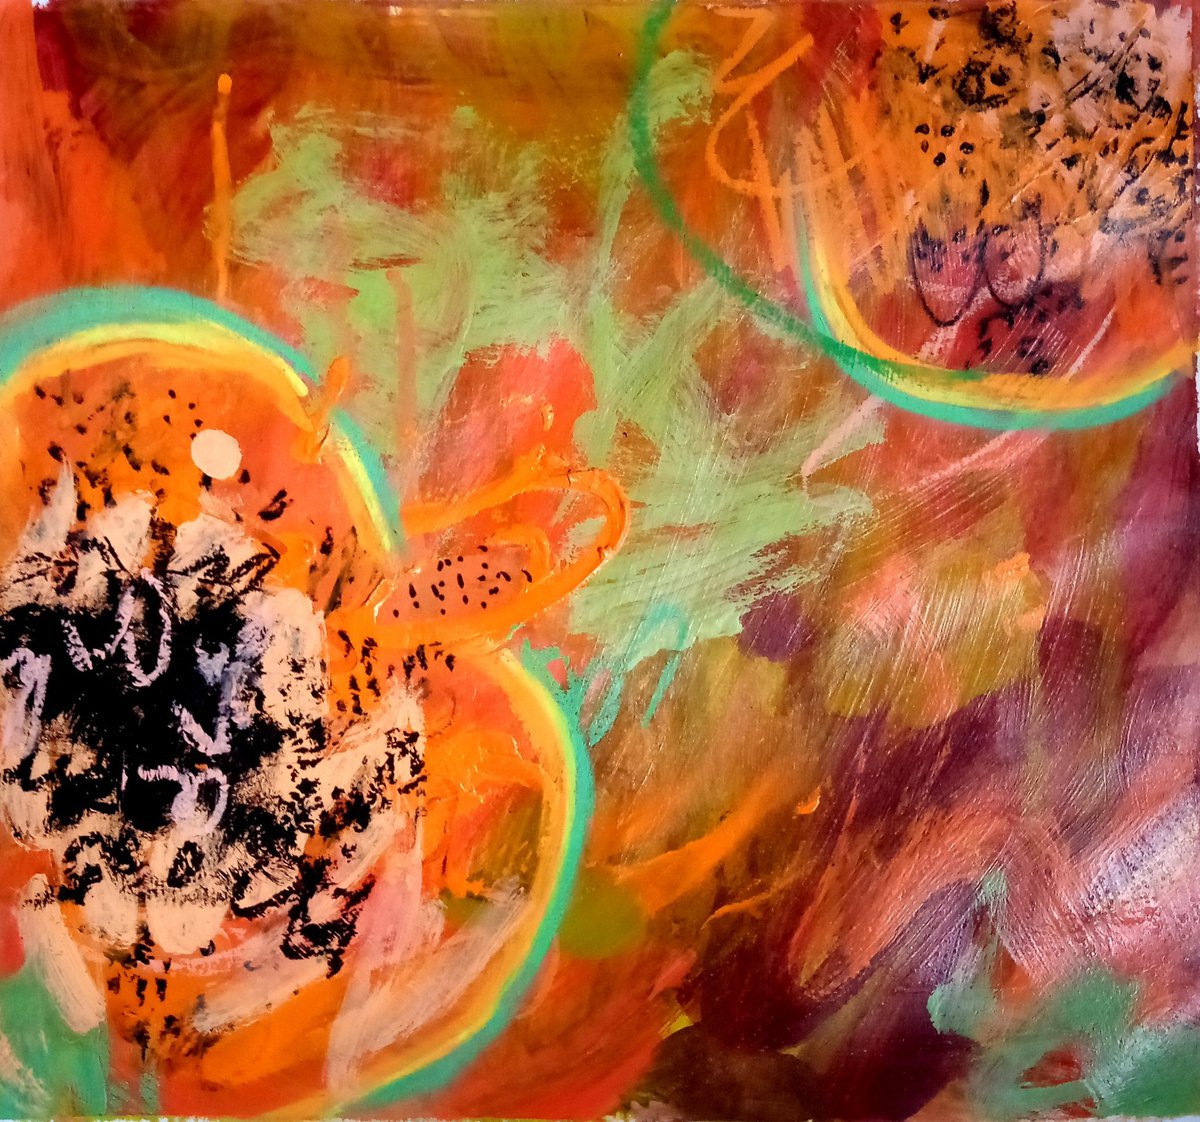 Abstract Papaya #1/2021 by Valerie Lazareva